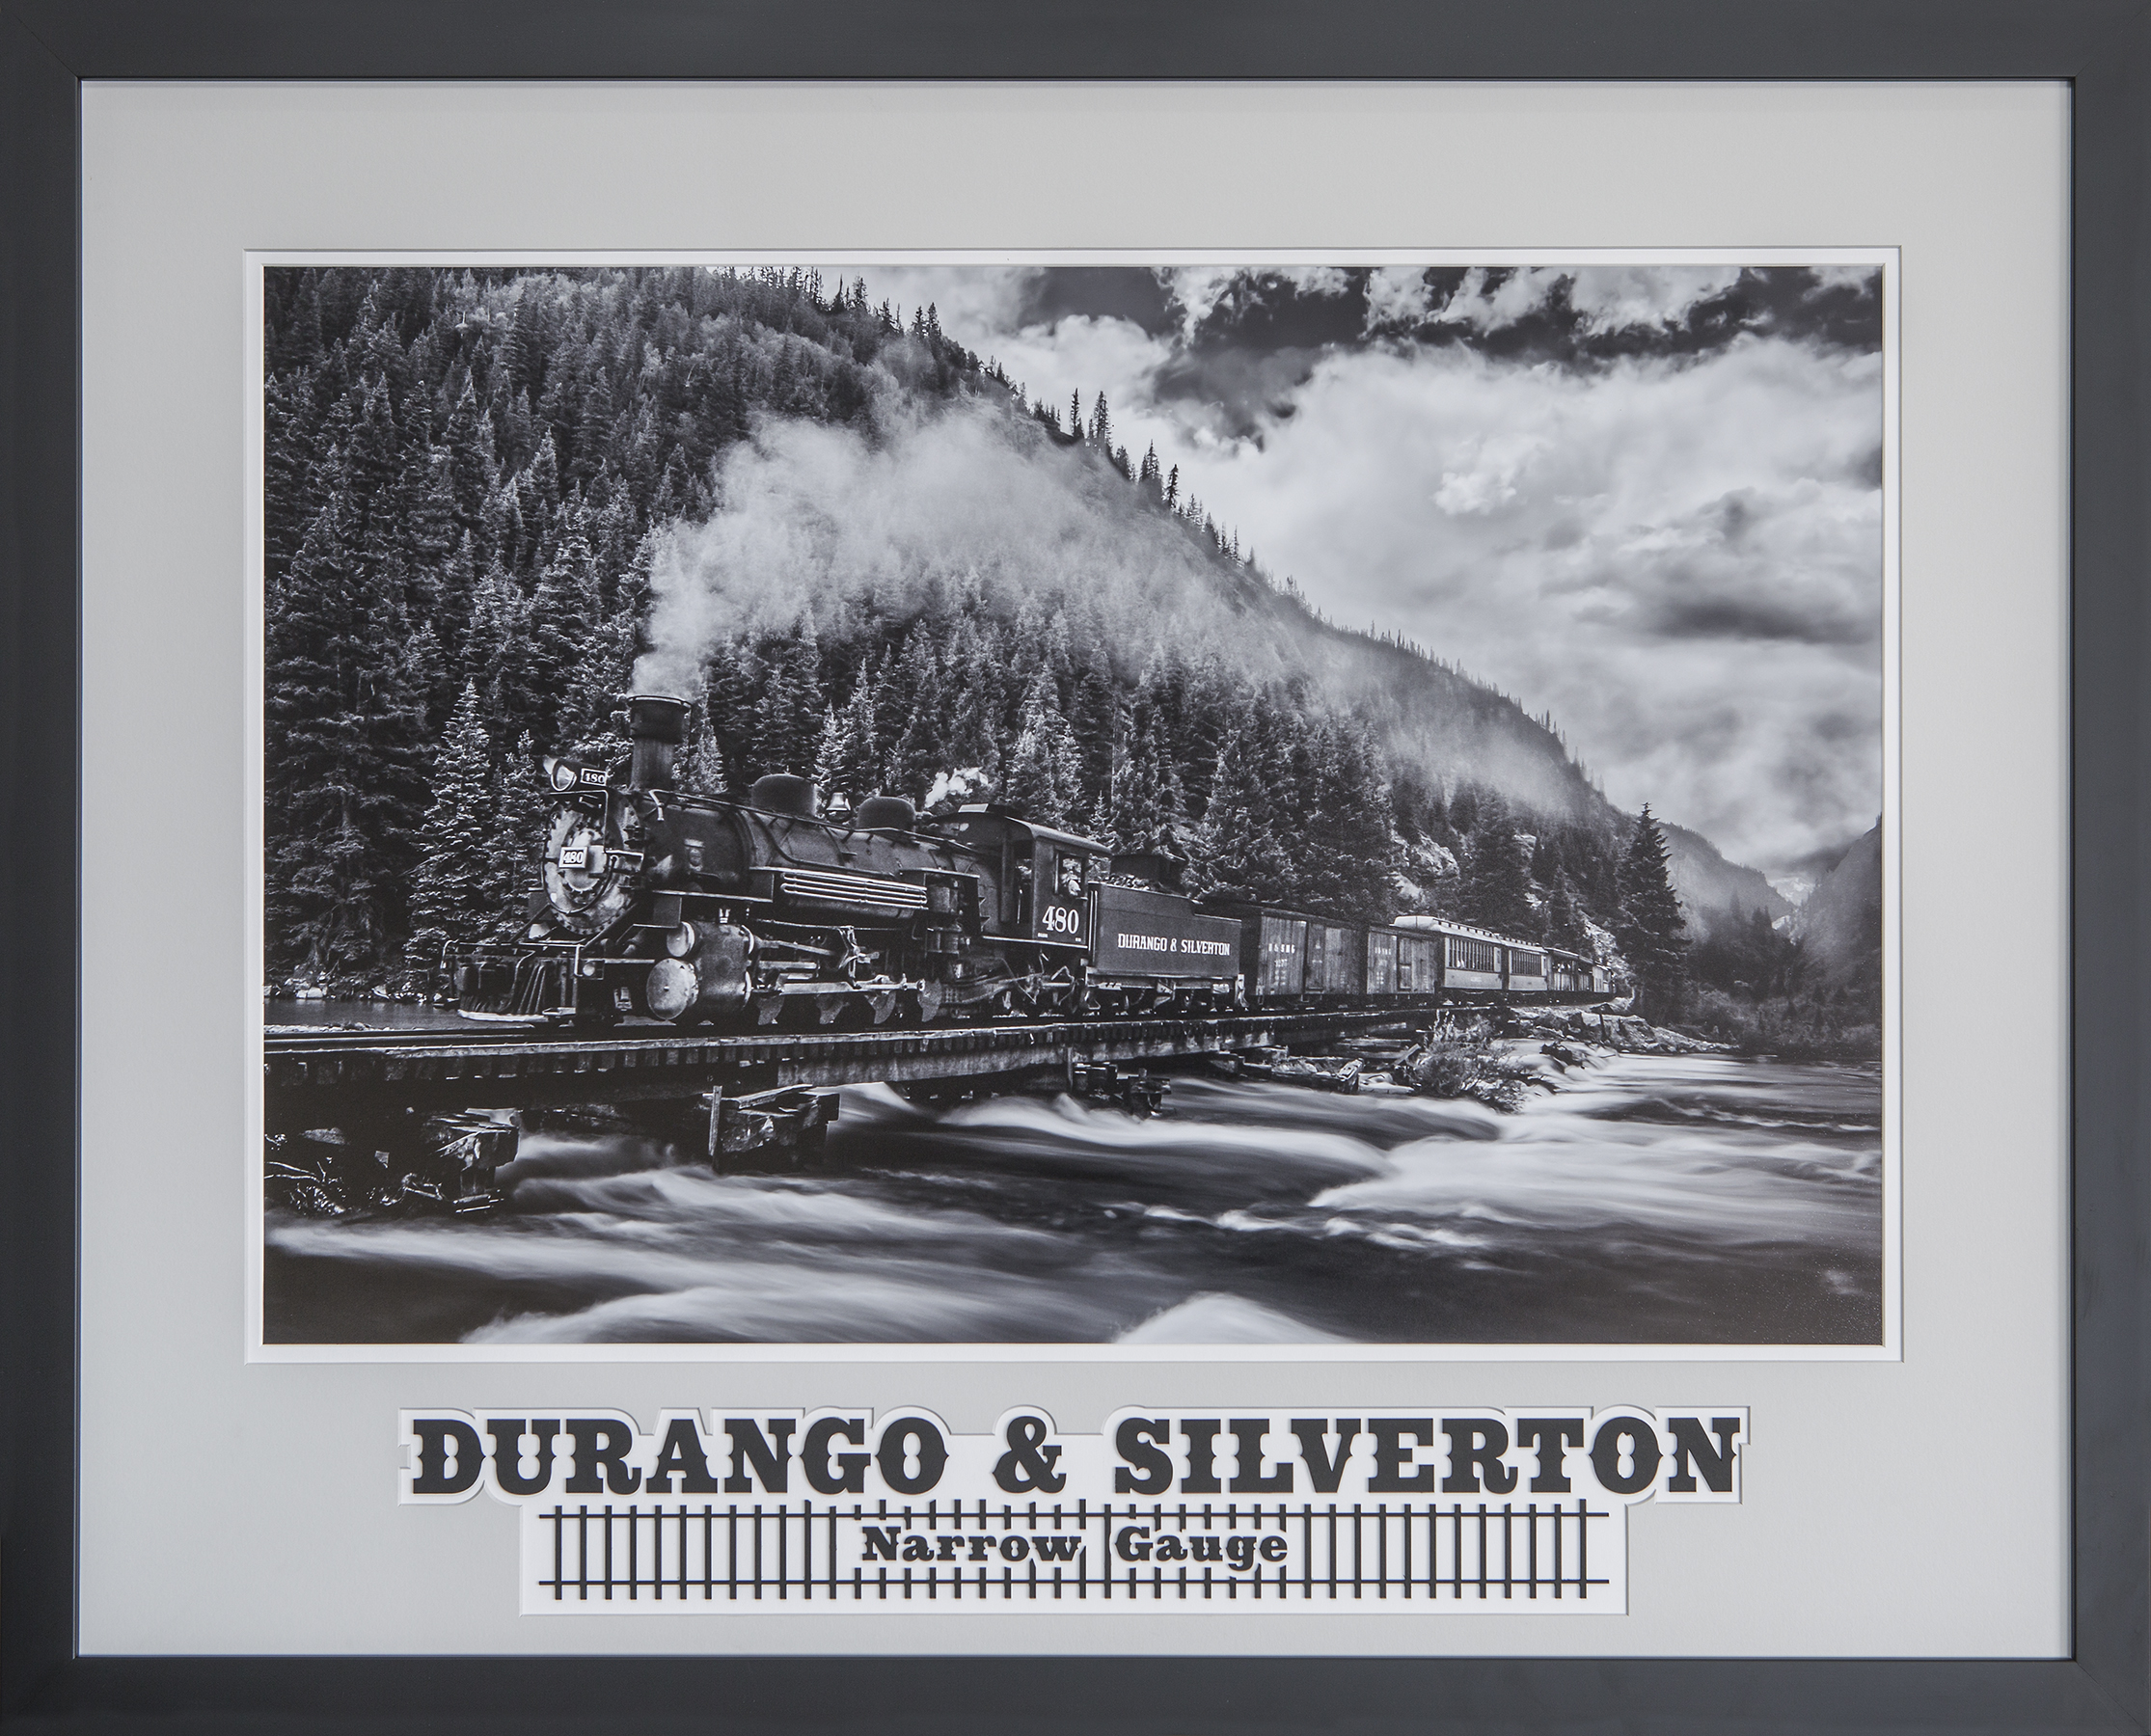 Durango & Silverton, cropped-web.jpg